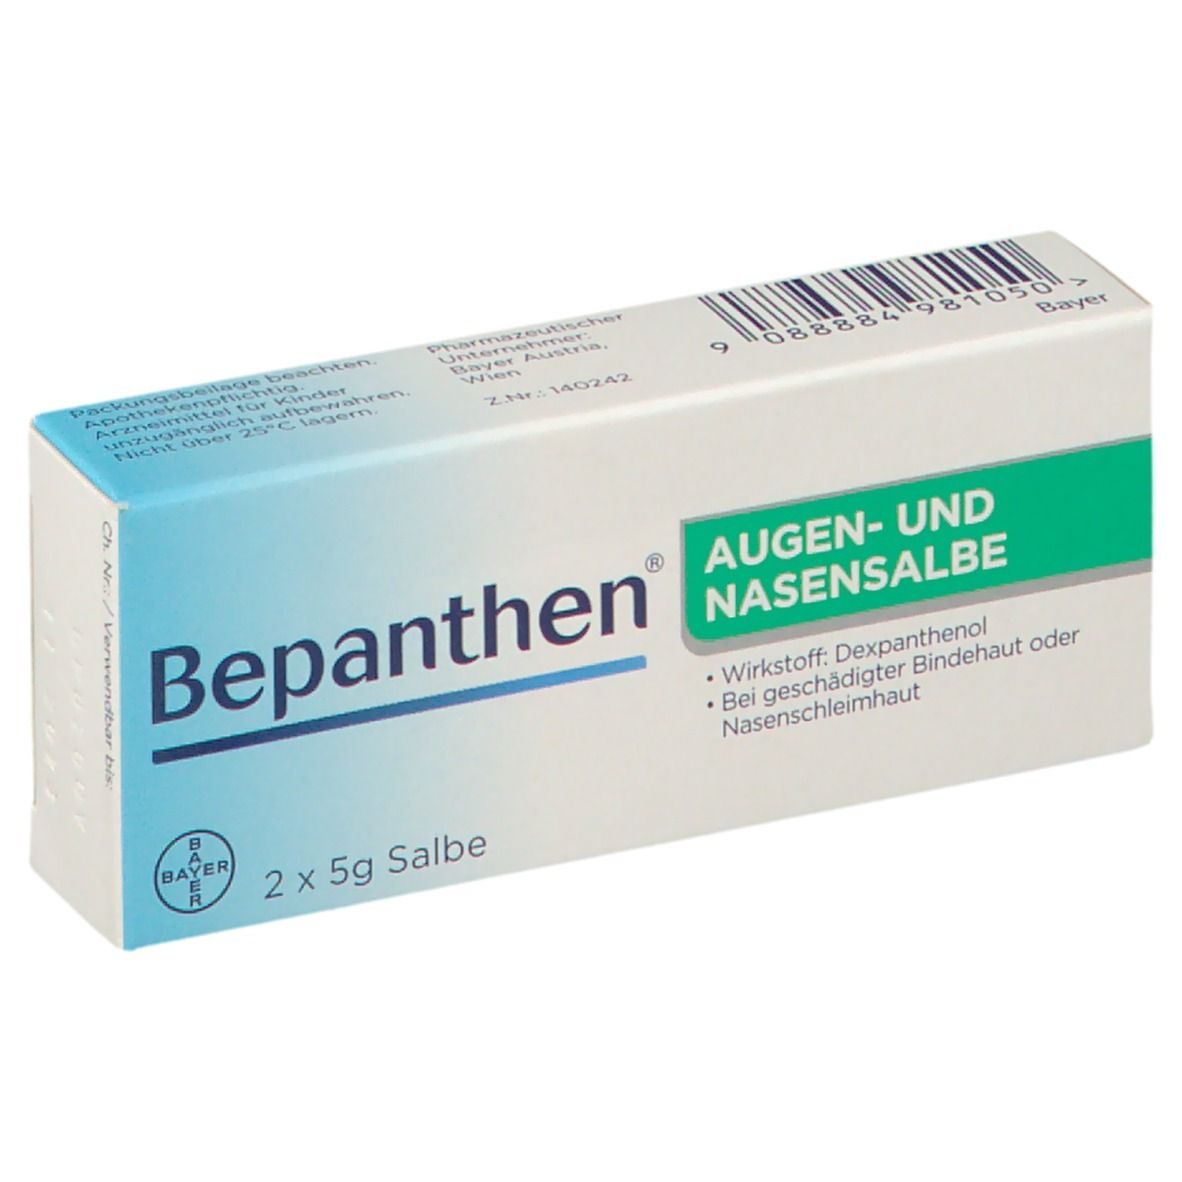 Bepanthen® AUGEN- UND NASENSALBE